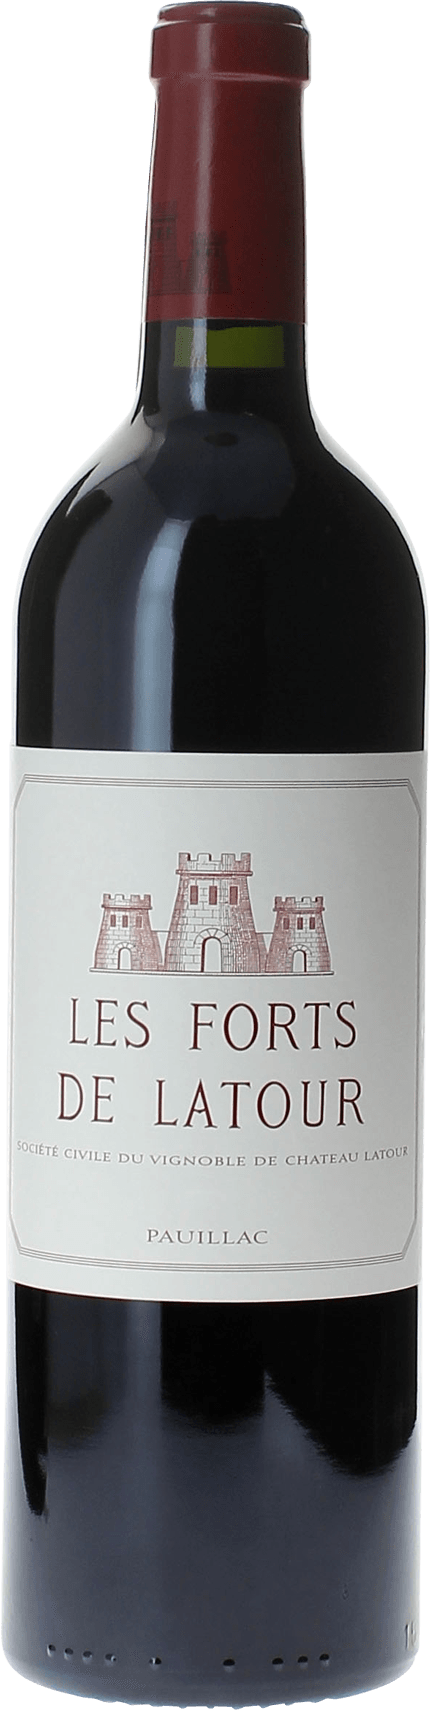 Les forts de latour 2005 2me vin de LATOUR Pauillac, Bordeaux rouge